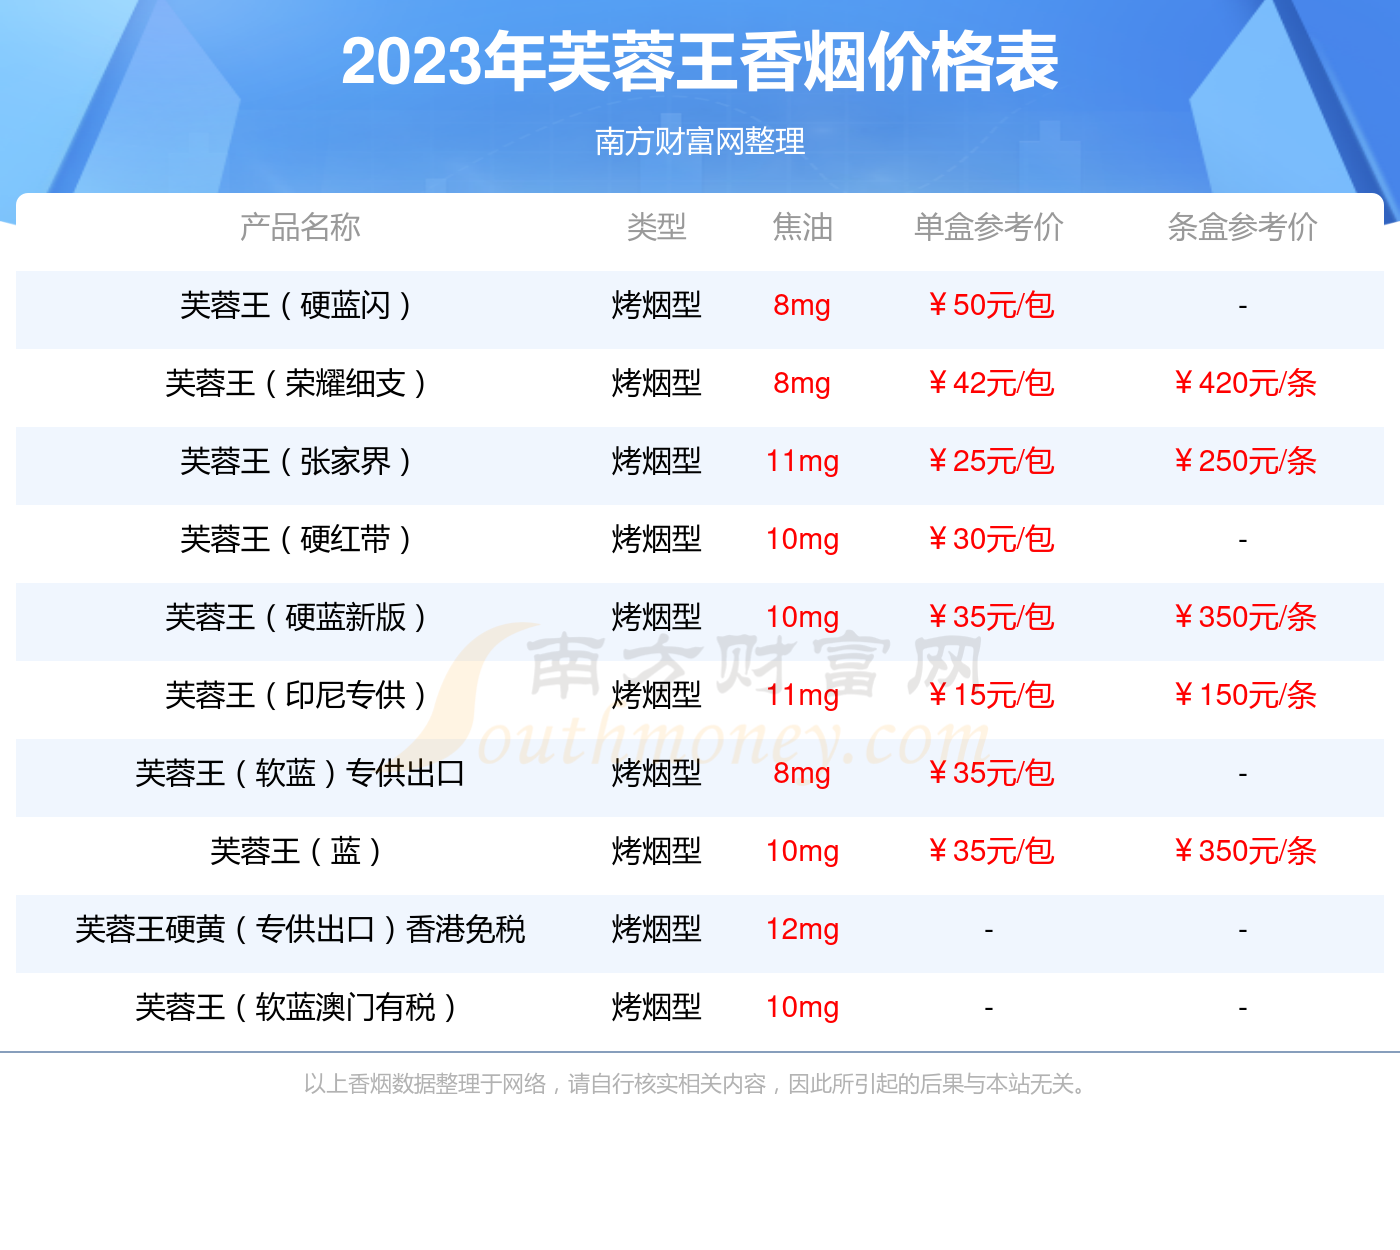 2020年芙蓉王价格图片